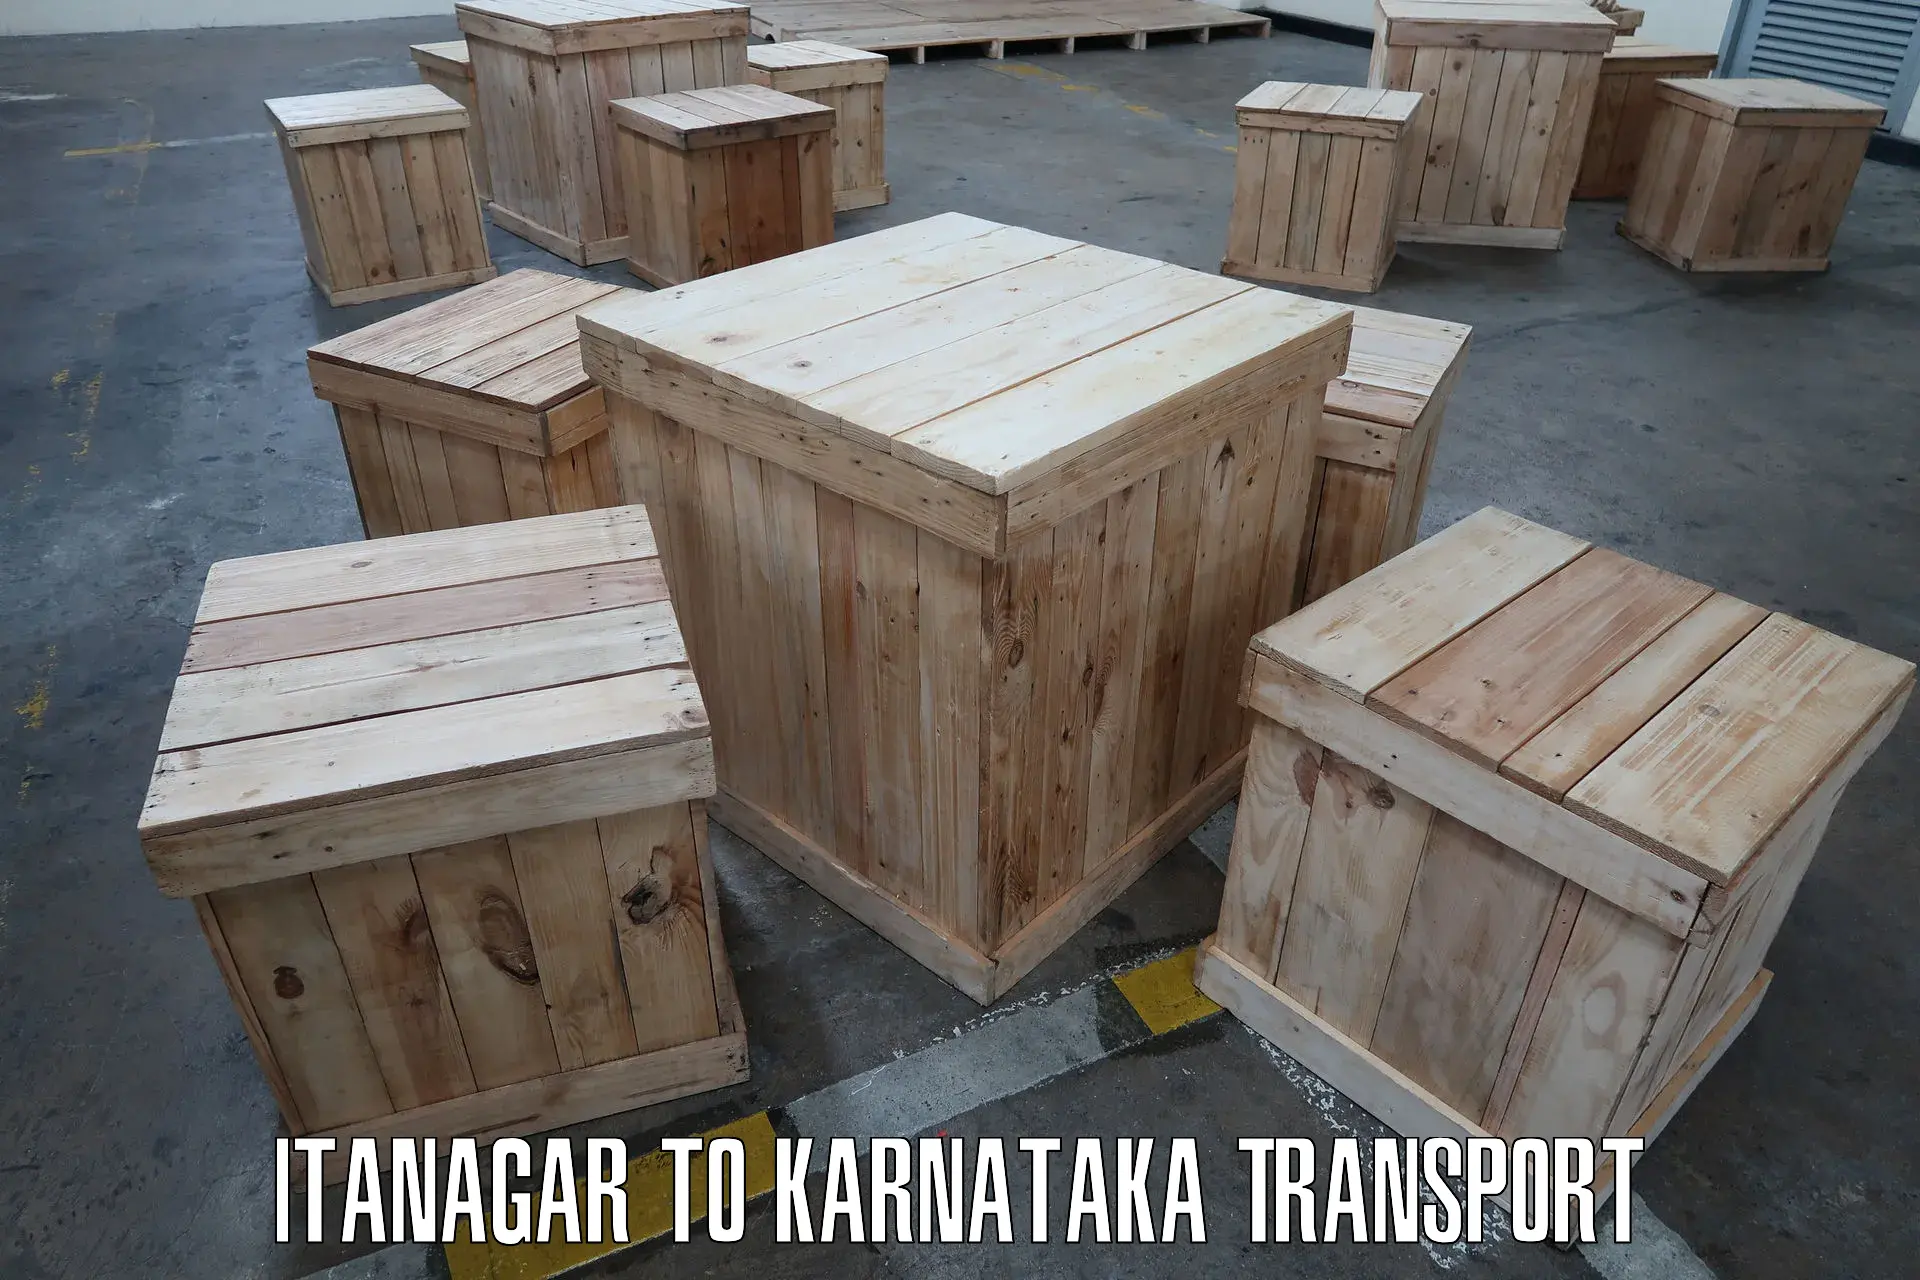 Container transportation services Itanagar to Ranebennur